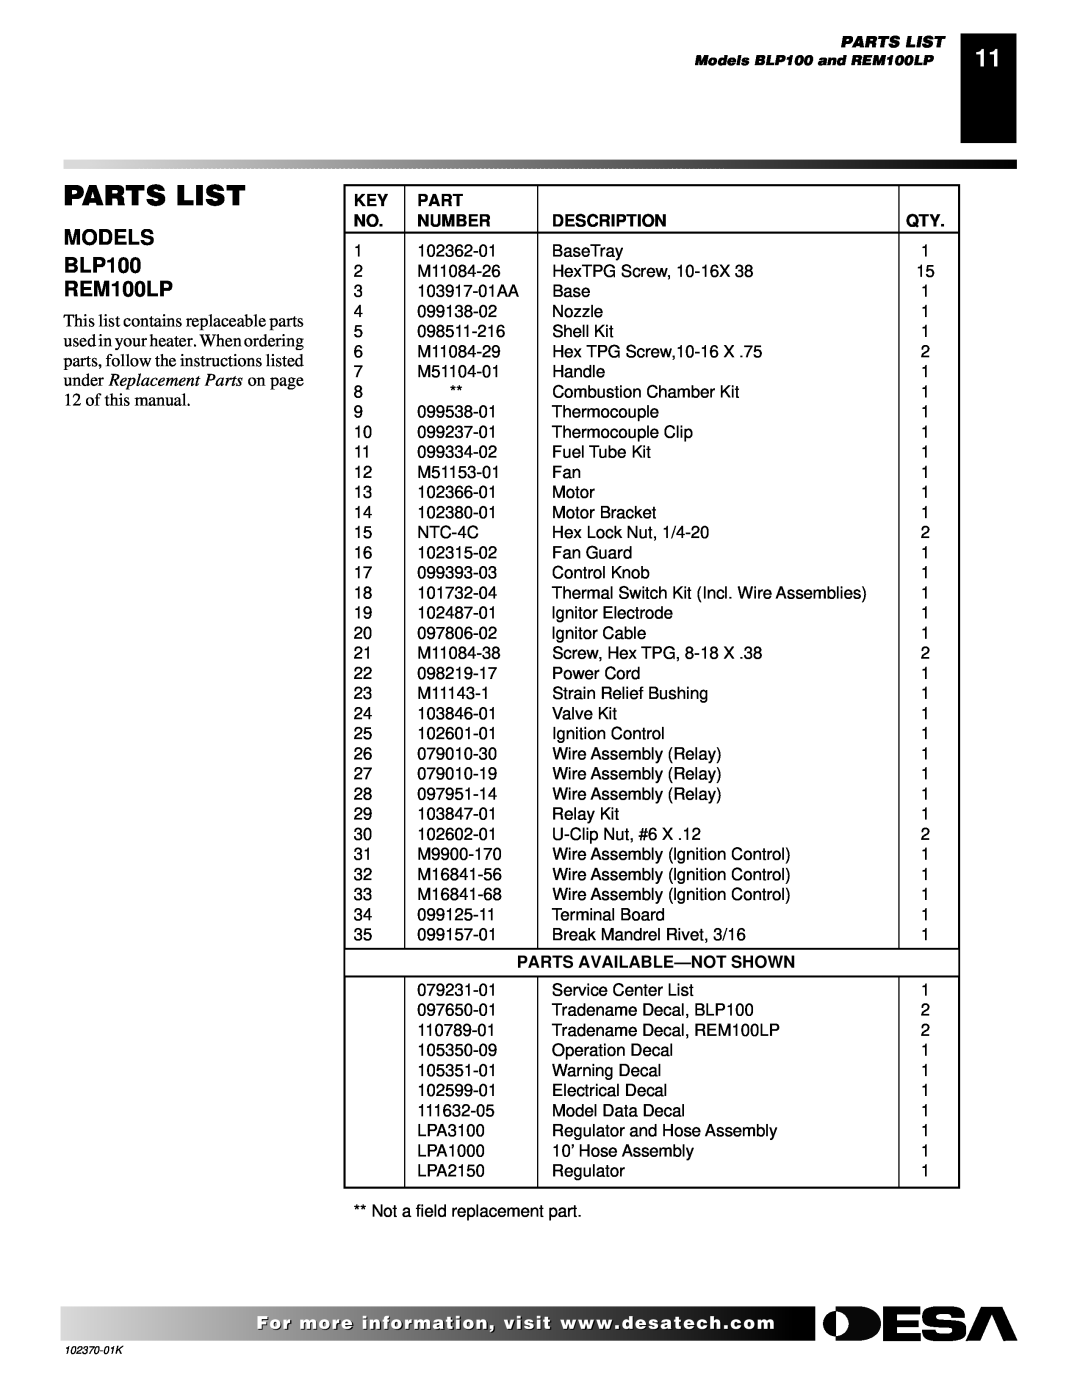 Desa BLP100, REM100LP owner manual Parts List, Number, Description, Parts Available-Notshown 